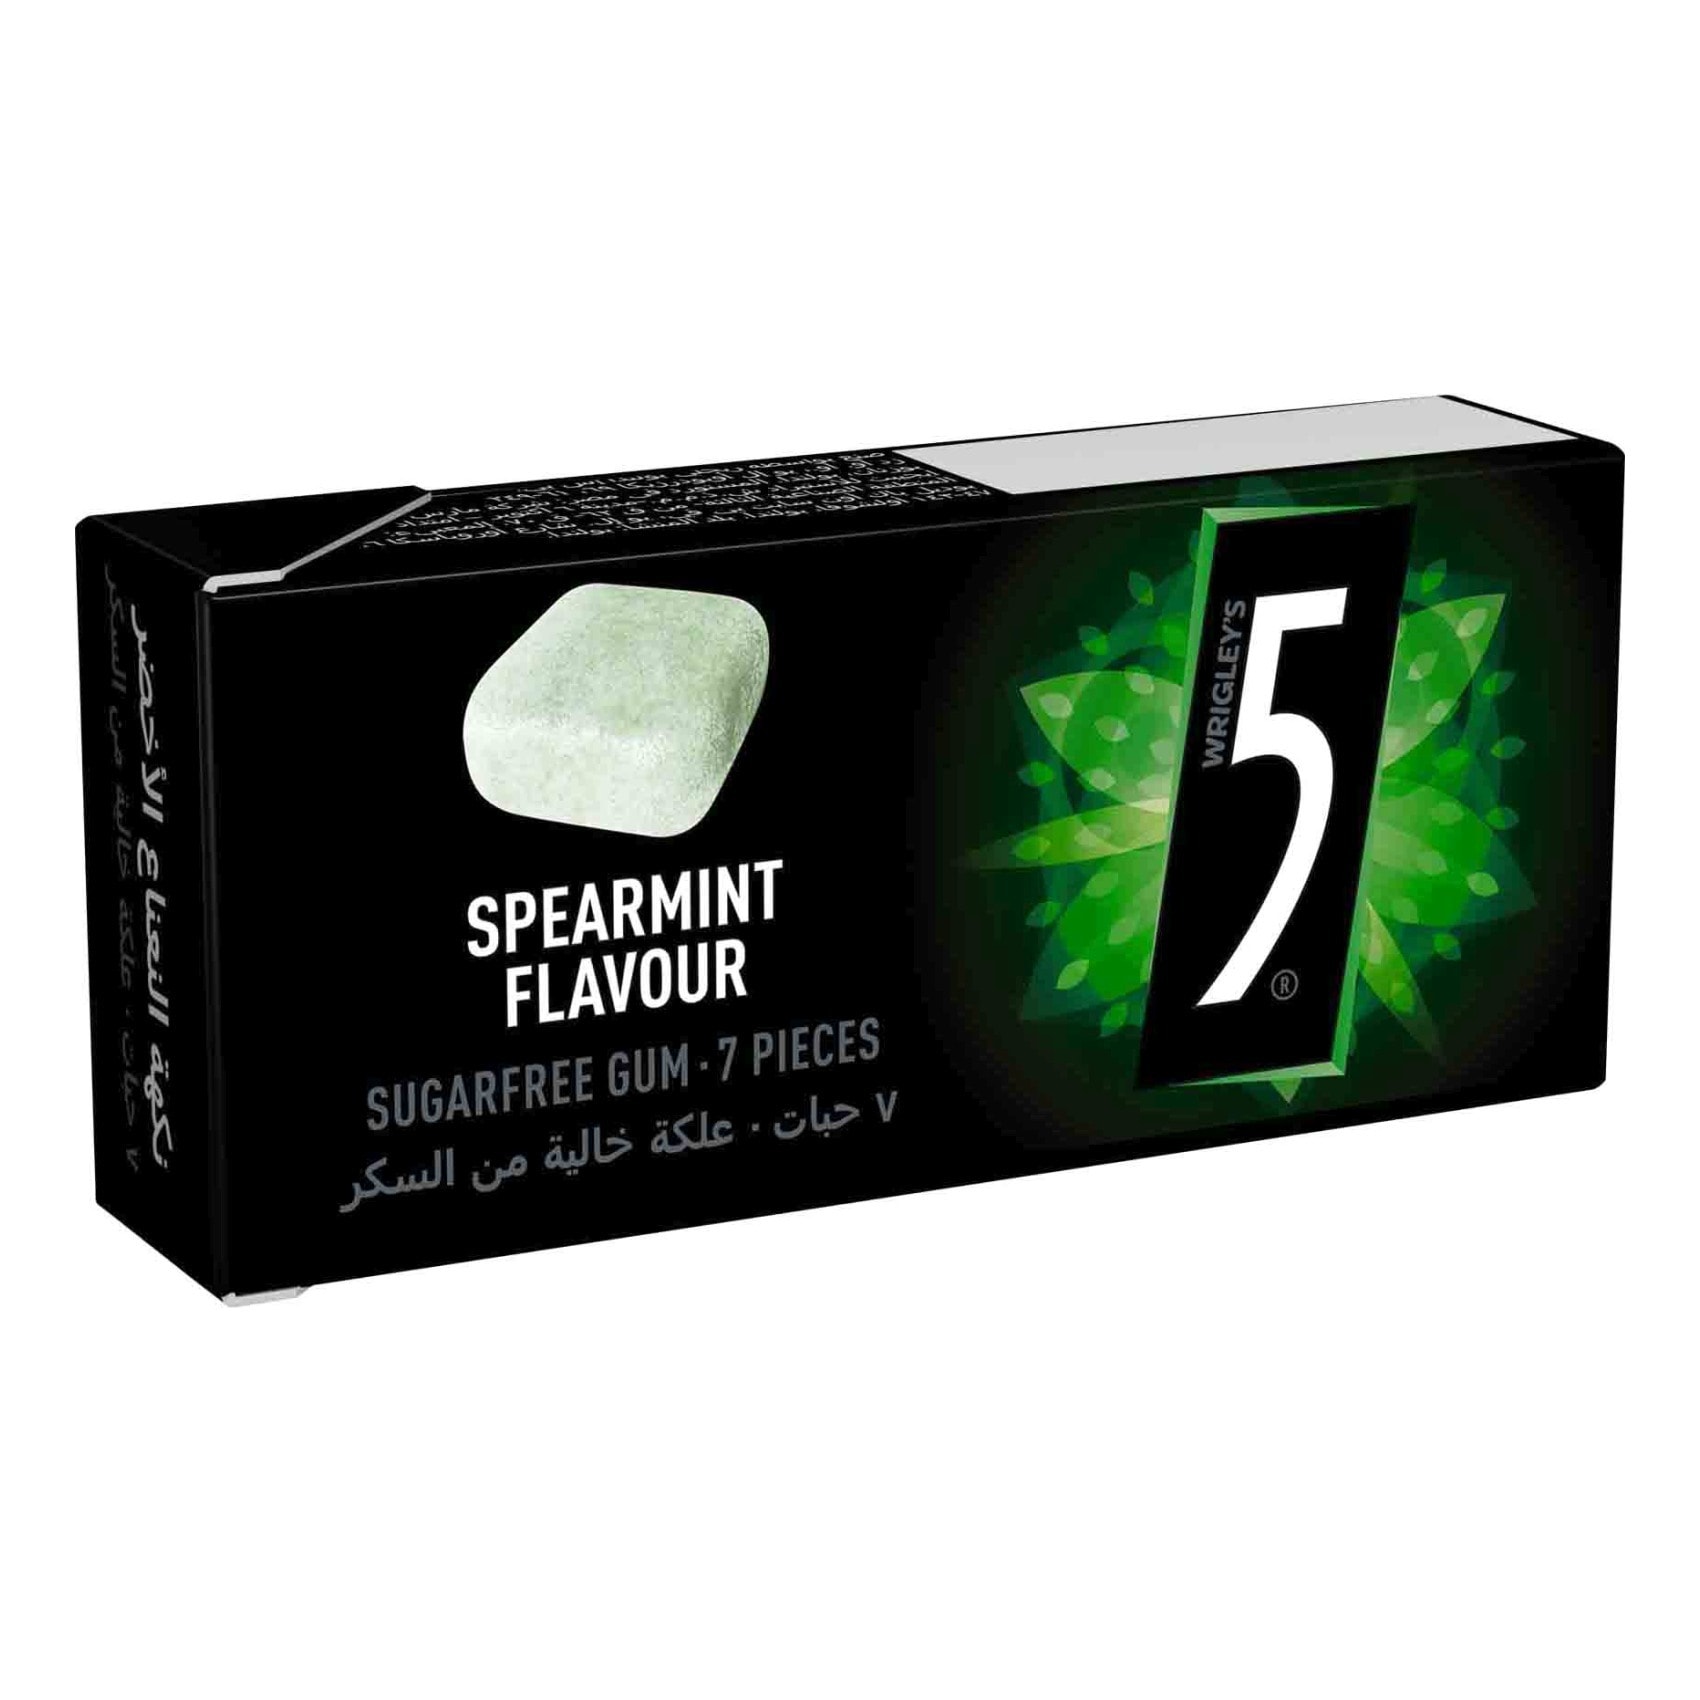 Five Cube spearmint gum 